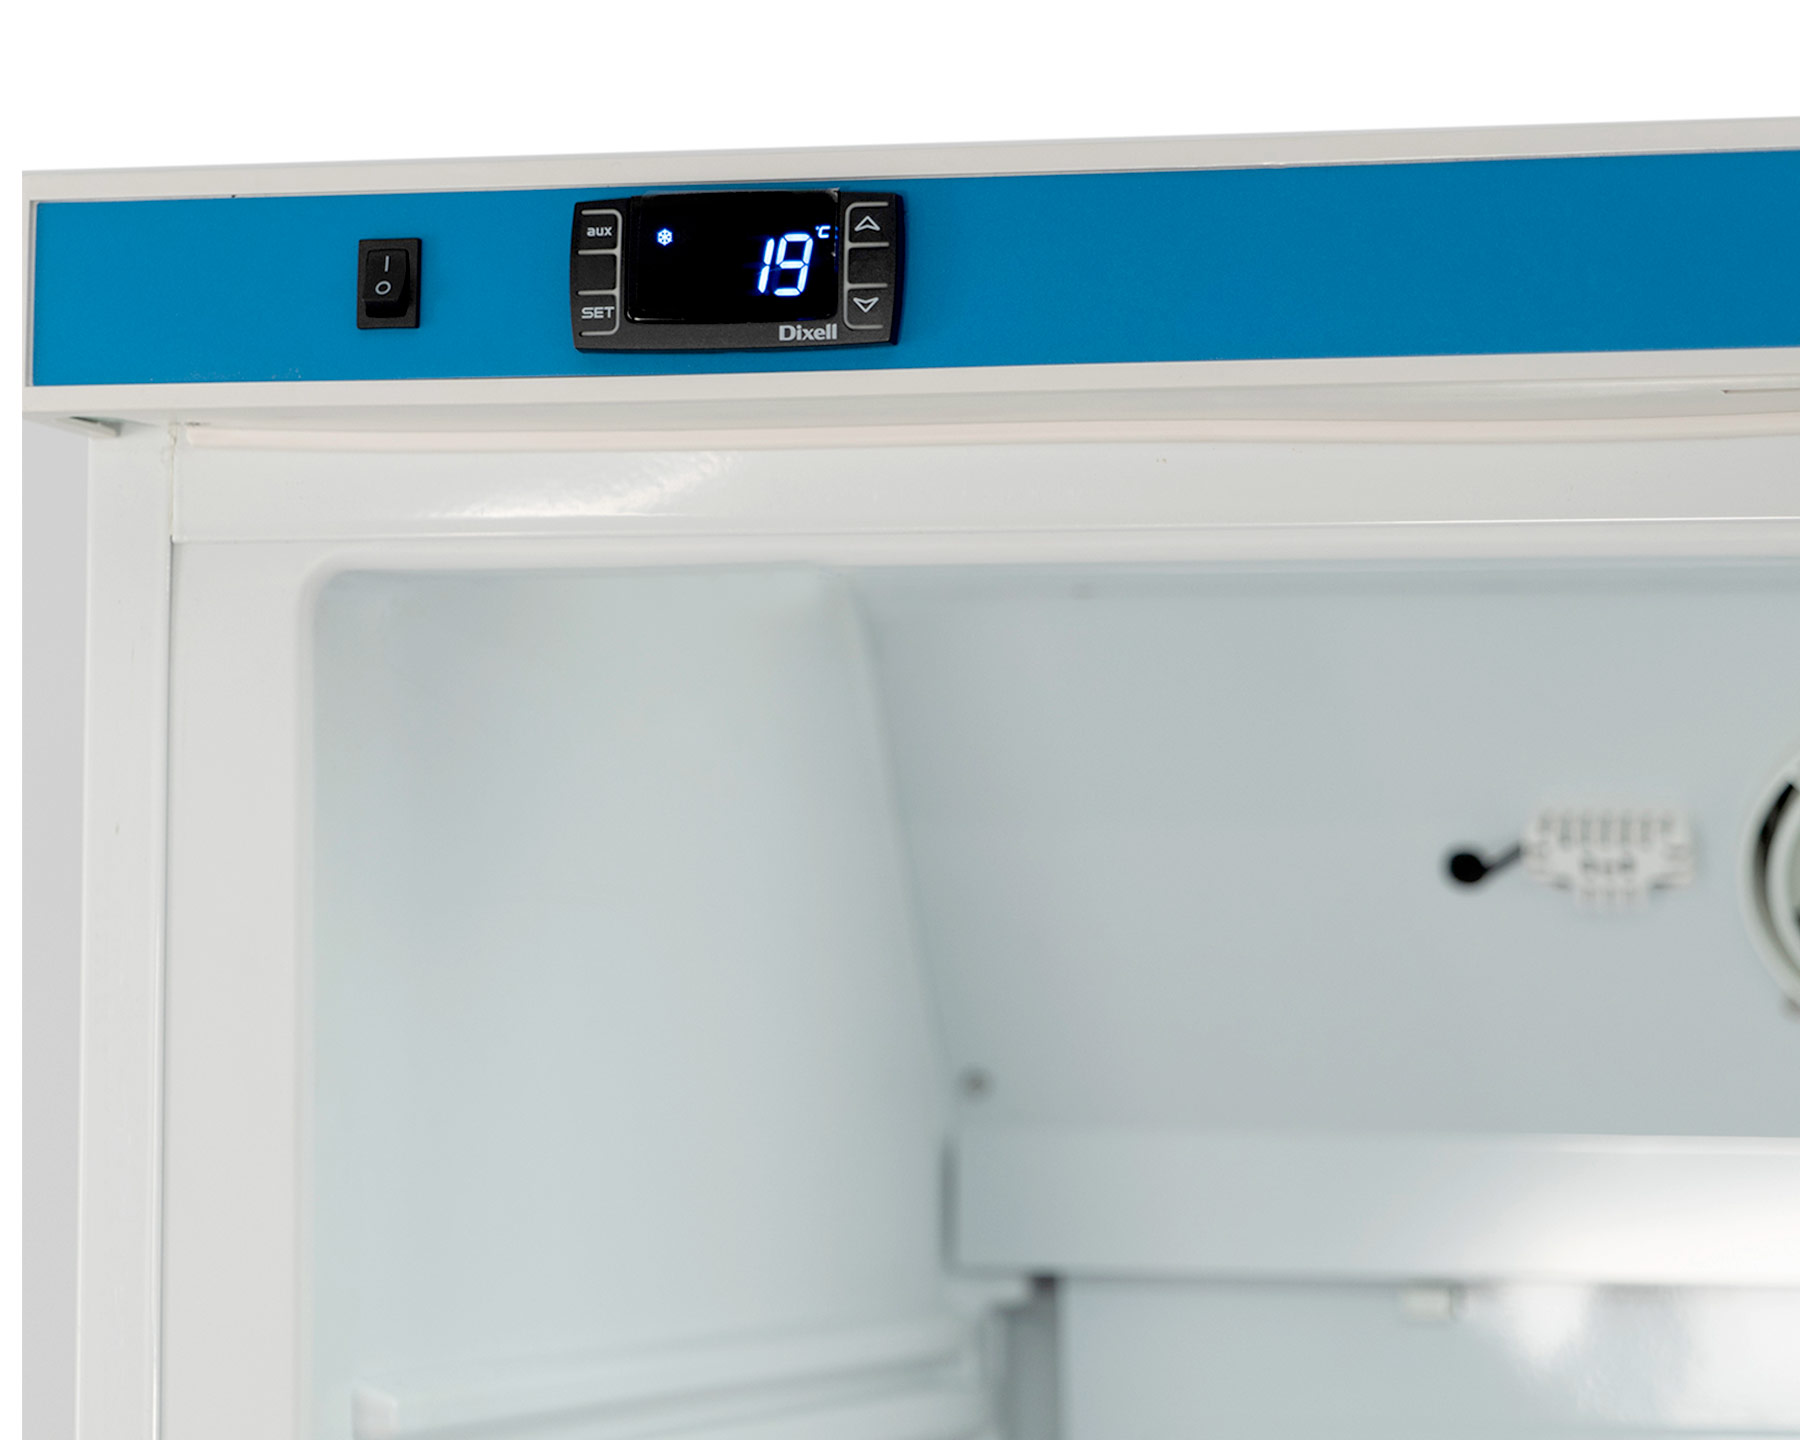 Kühlschrank - 620L - Glastür - Statisch mit Umluftventilator